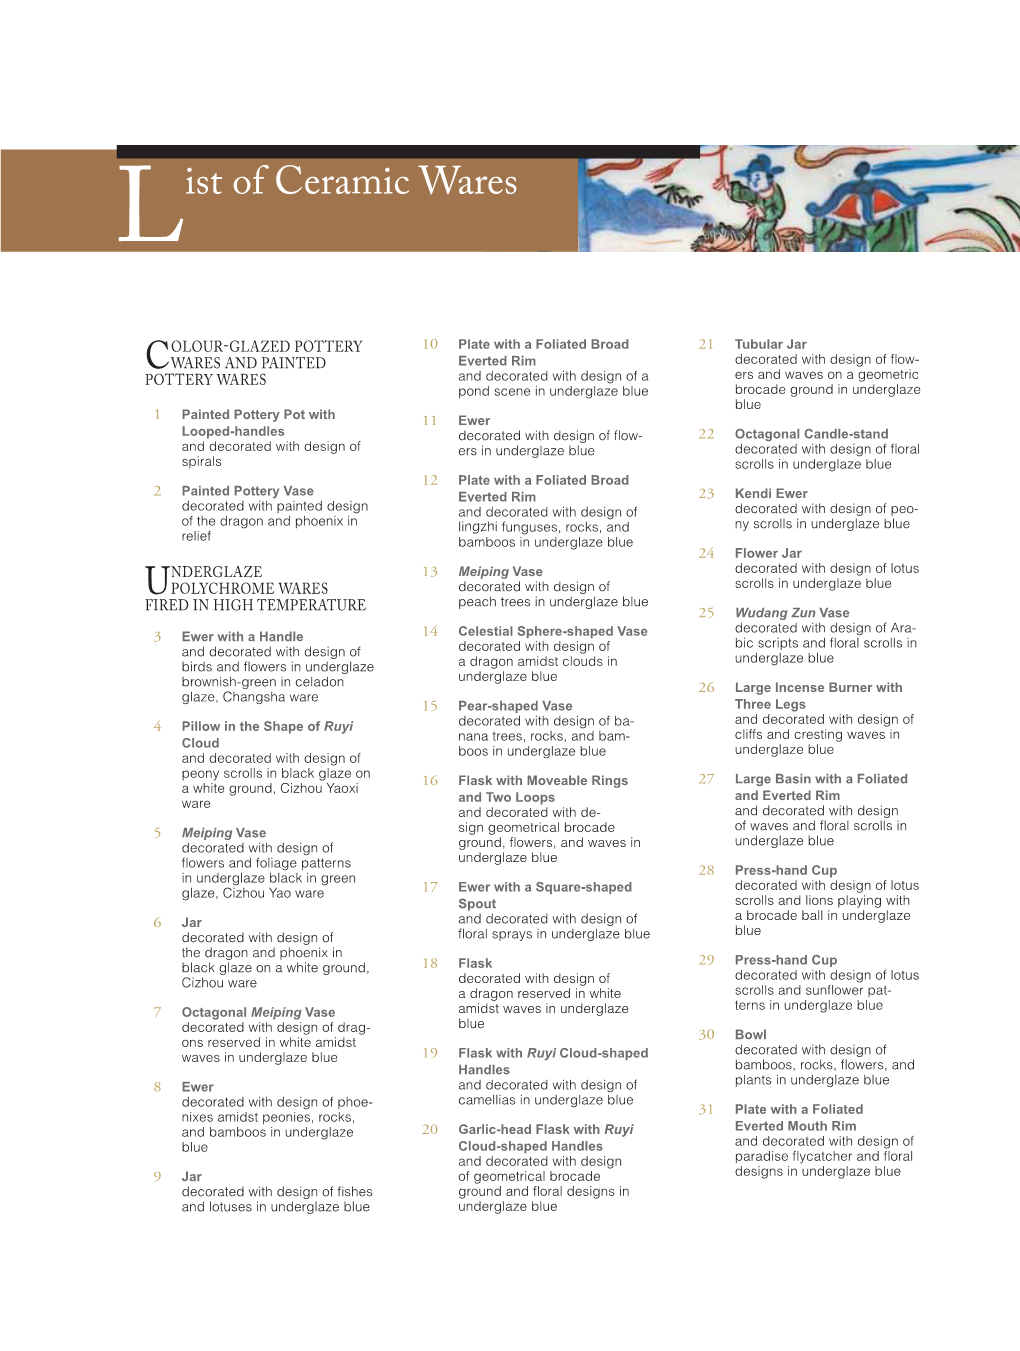 List of Ceramic Wares